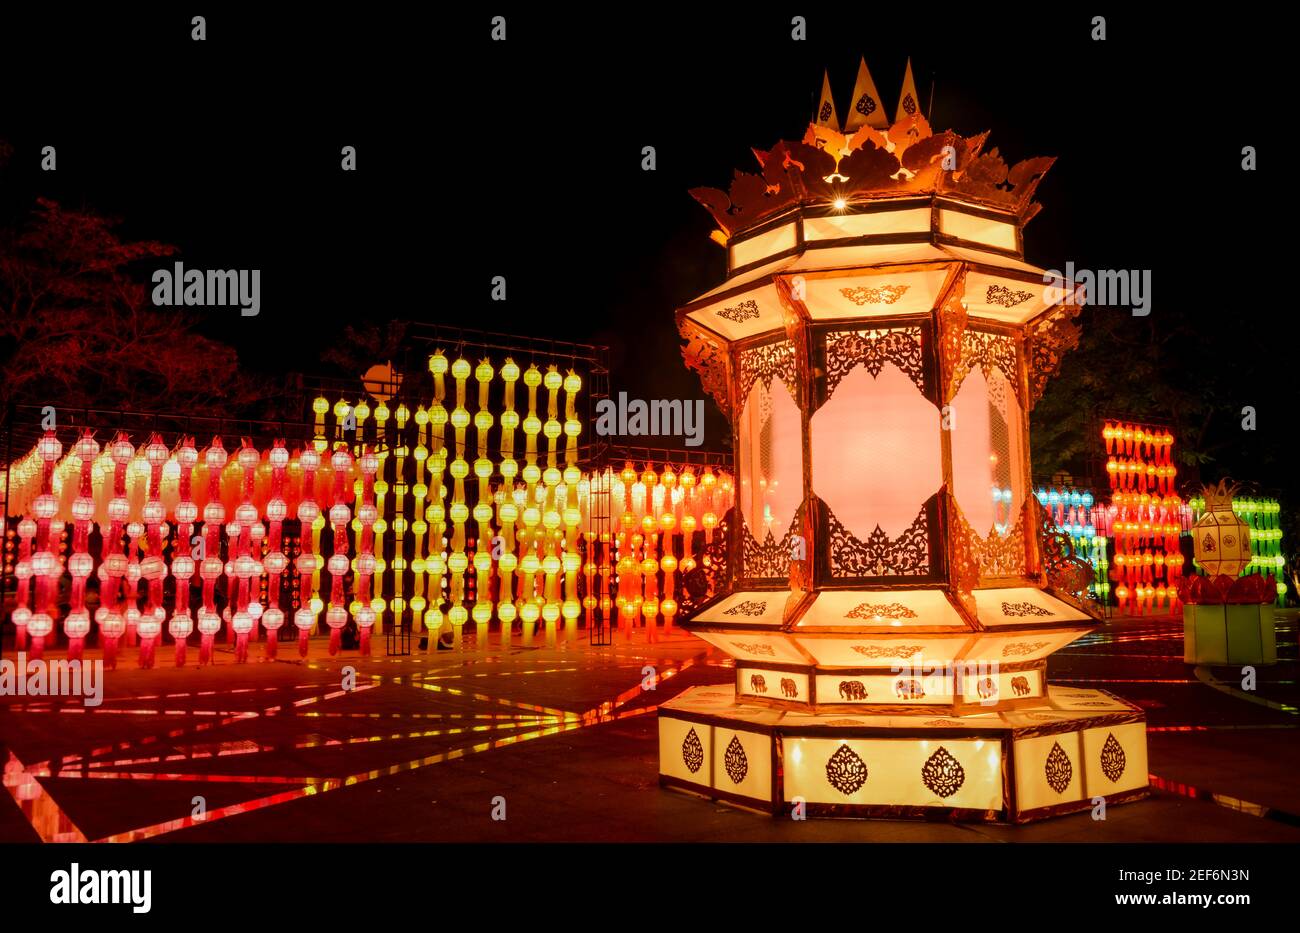 Colorate lanterne di strada del festival di Loy krathong in Thailandia notte pubblica. Foto Stock